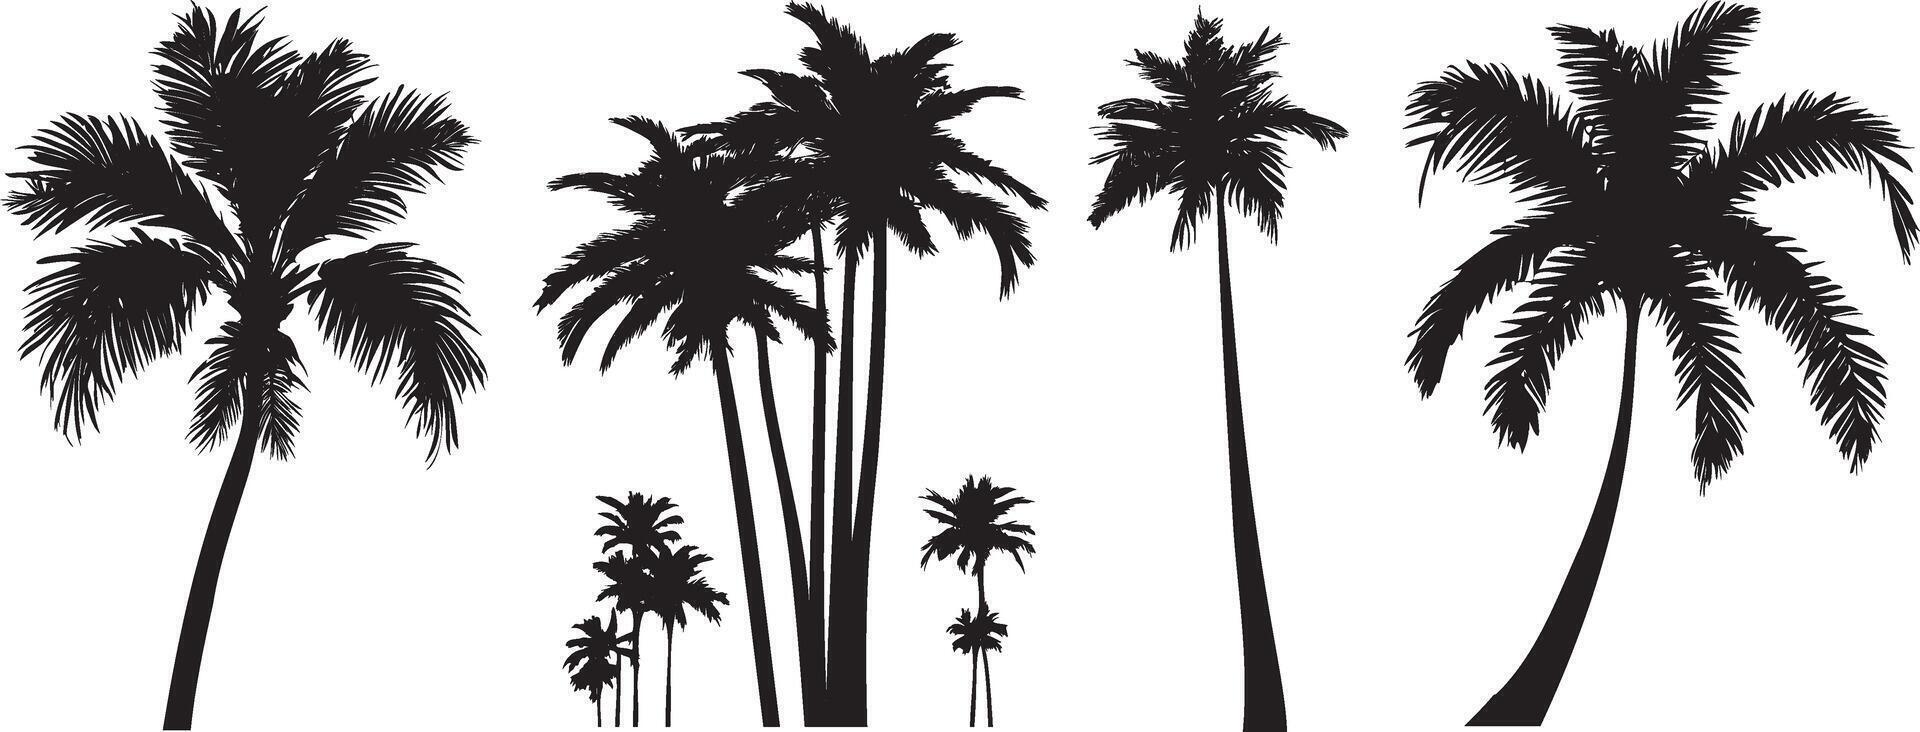 schwarz Palme Bäume einstellen isoliert auf Weiß Hintergrund. Palme Silhouetten. Design von Palme Bäume zum Poster, Banner und Werbung Artikel. Vektor Illustration